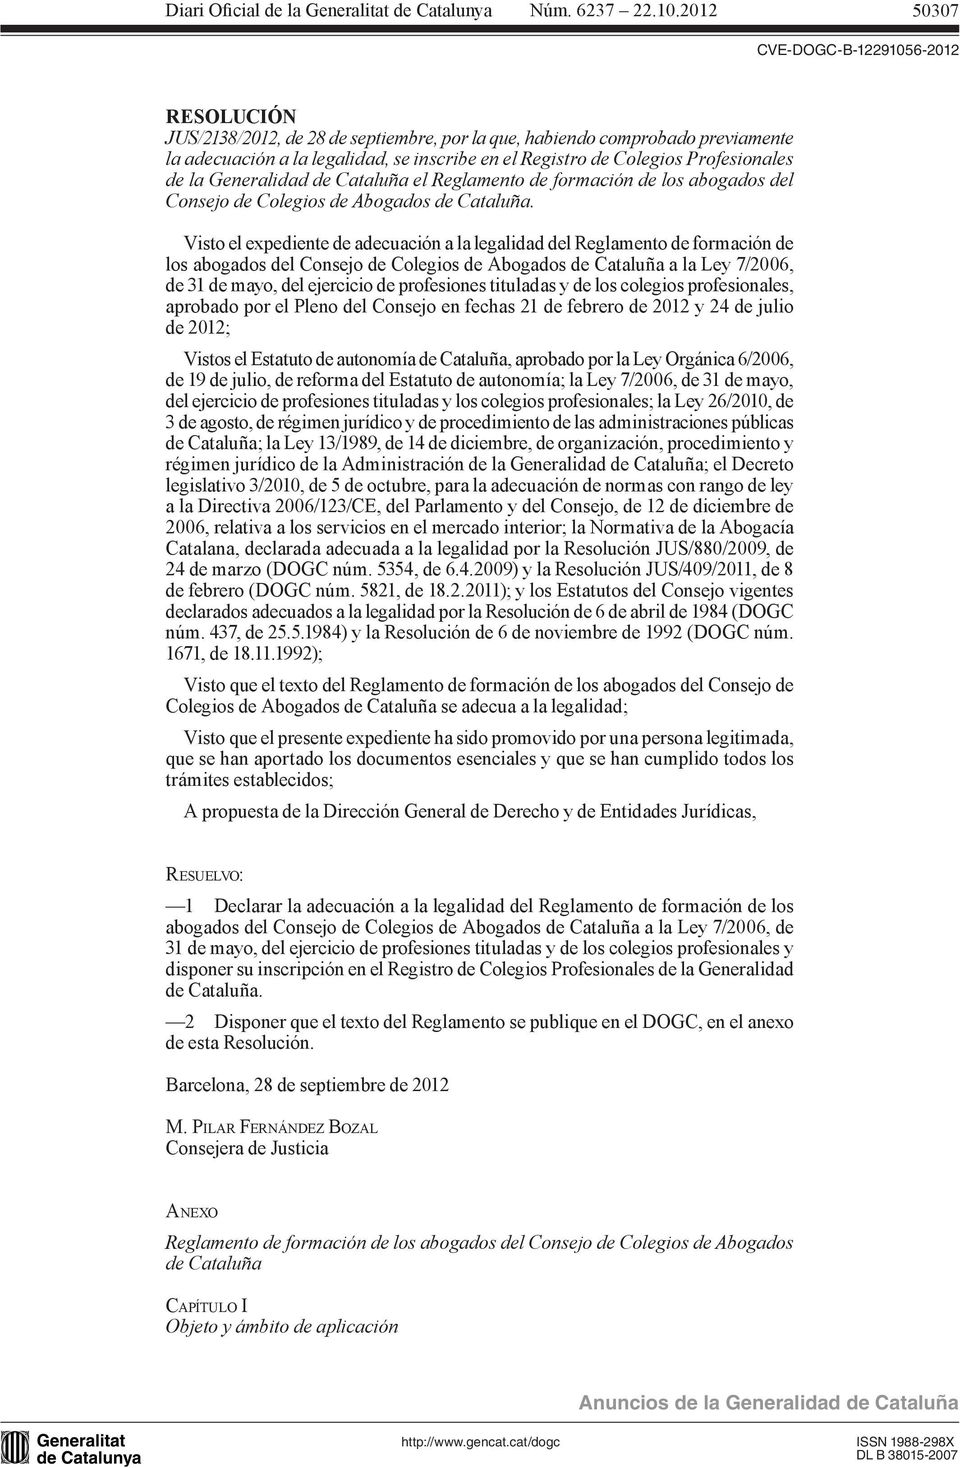 Visto el expediente de adecuación a la legalidad del Reglamento de formación de los abogados del Consejo de Colegios de Abogados de Cataluña a la Ley 7/2006, de 31 de mayo, del ejercicio de